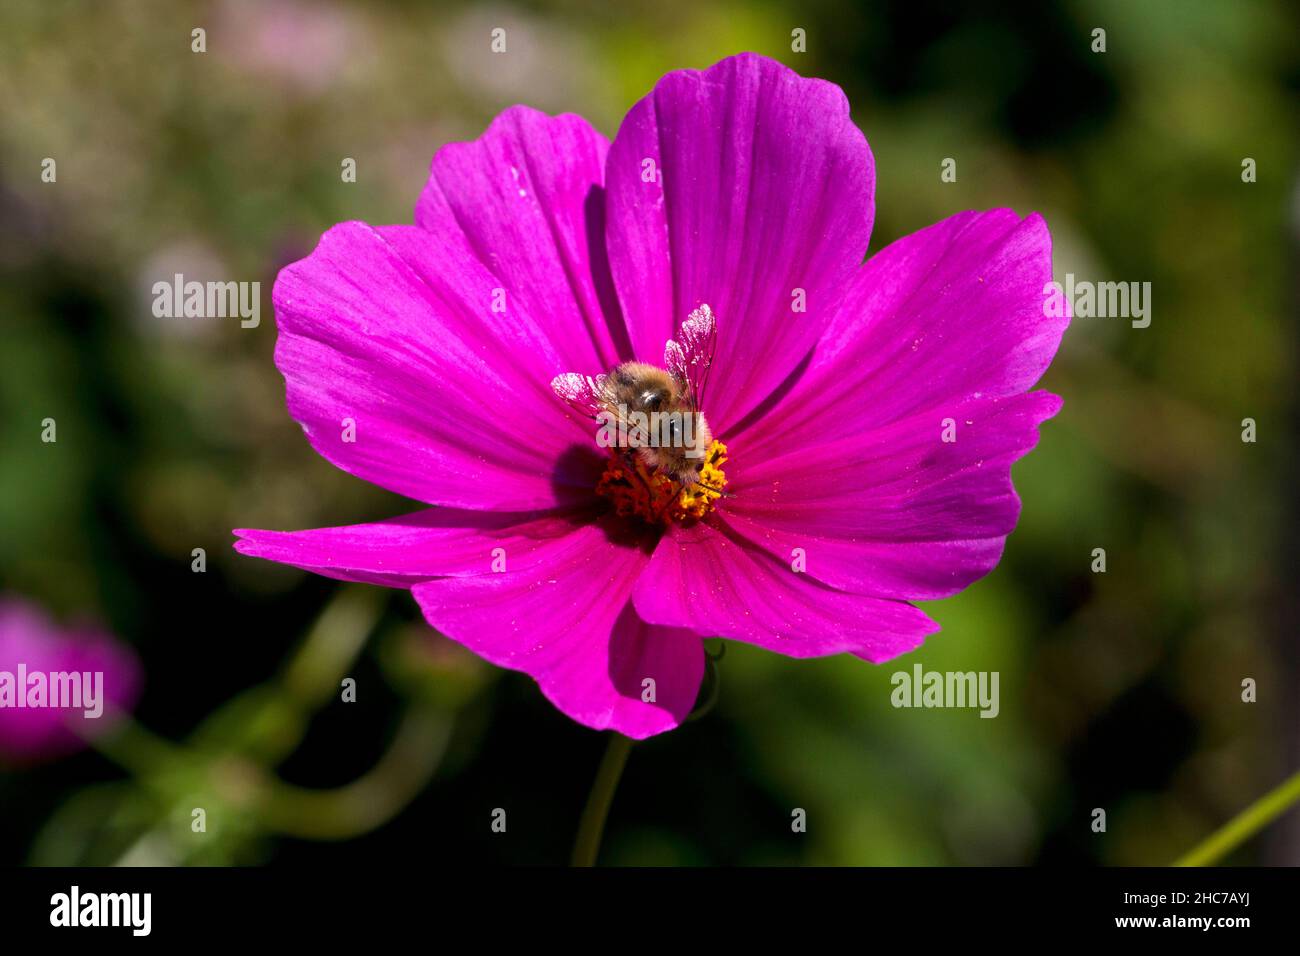 Une seule fleur de cosmos pourpres en pleine floraison avec une abeille pollinisante dans un jardin à Nanaimo, île de Vancouver, C.-B., Canada en juillet Banque D'Images